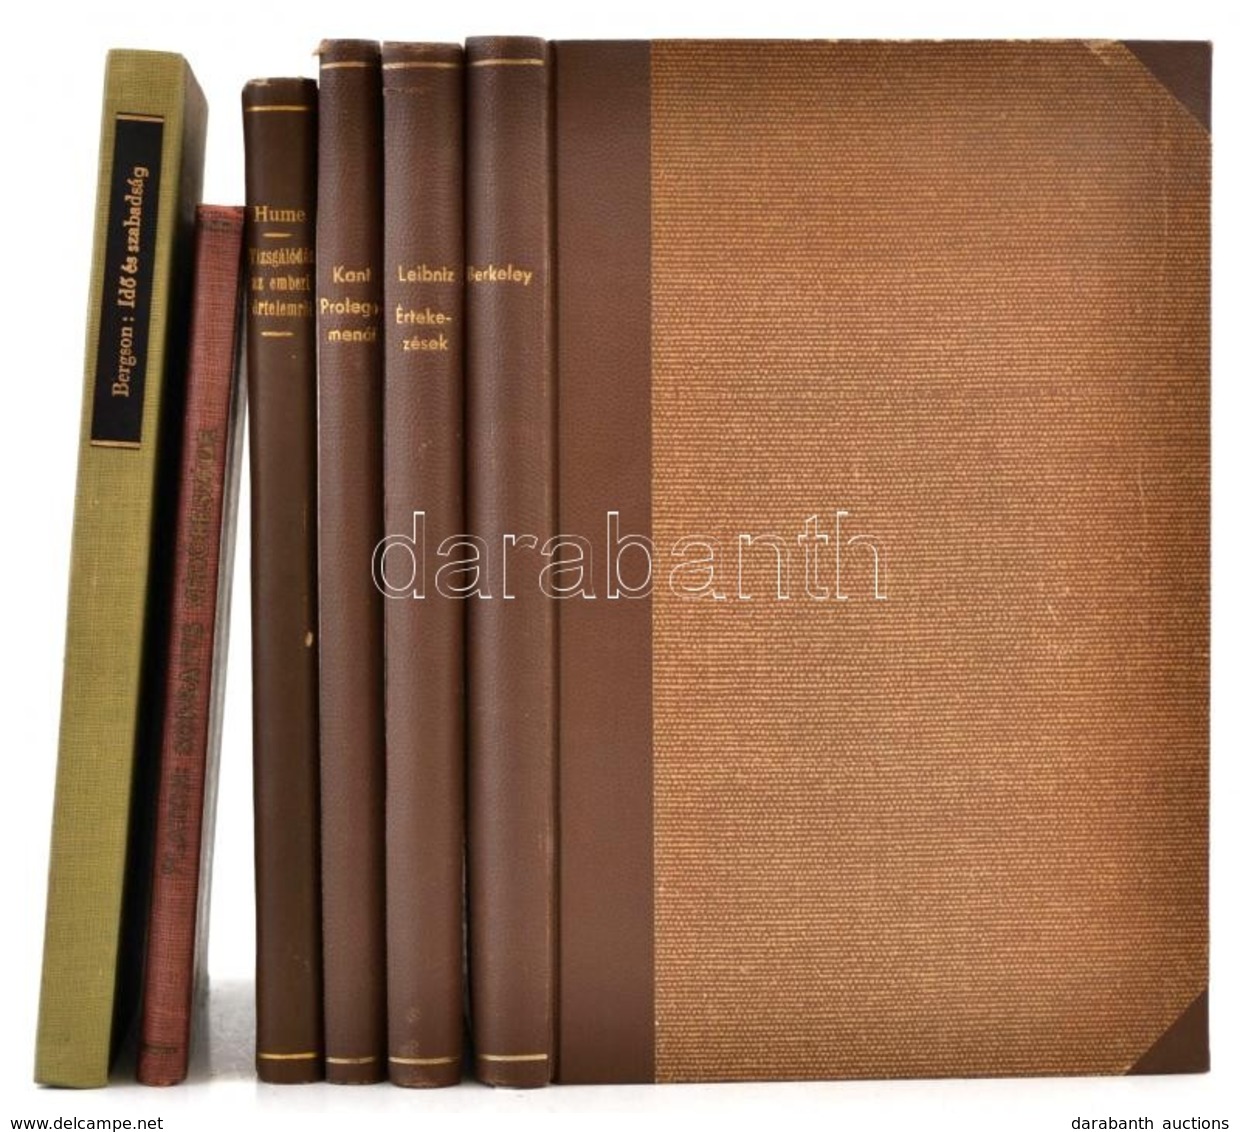 Filozófiai Írók Tára 5 Kötete és Az Officina Könyvtár 1 Kötete:
[David] Hume: Vizsgálódás Az Emberi értelemről. Fordítot - Unclassified